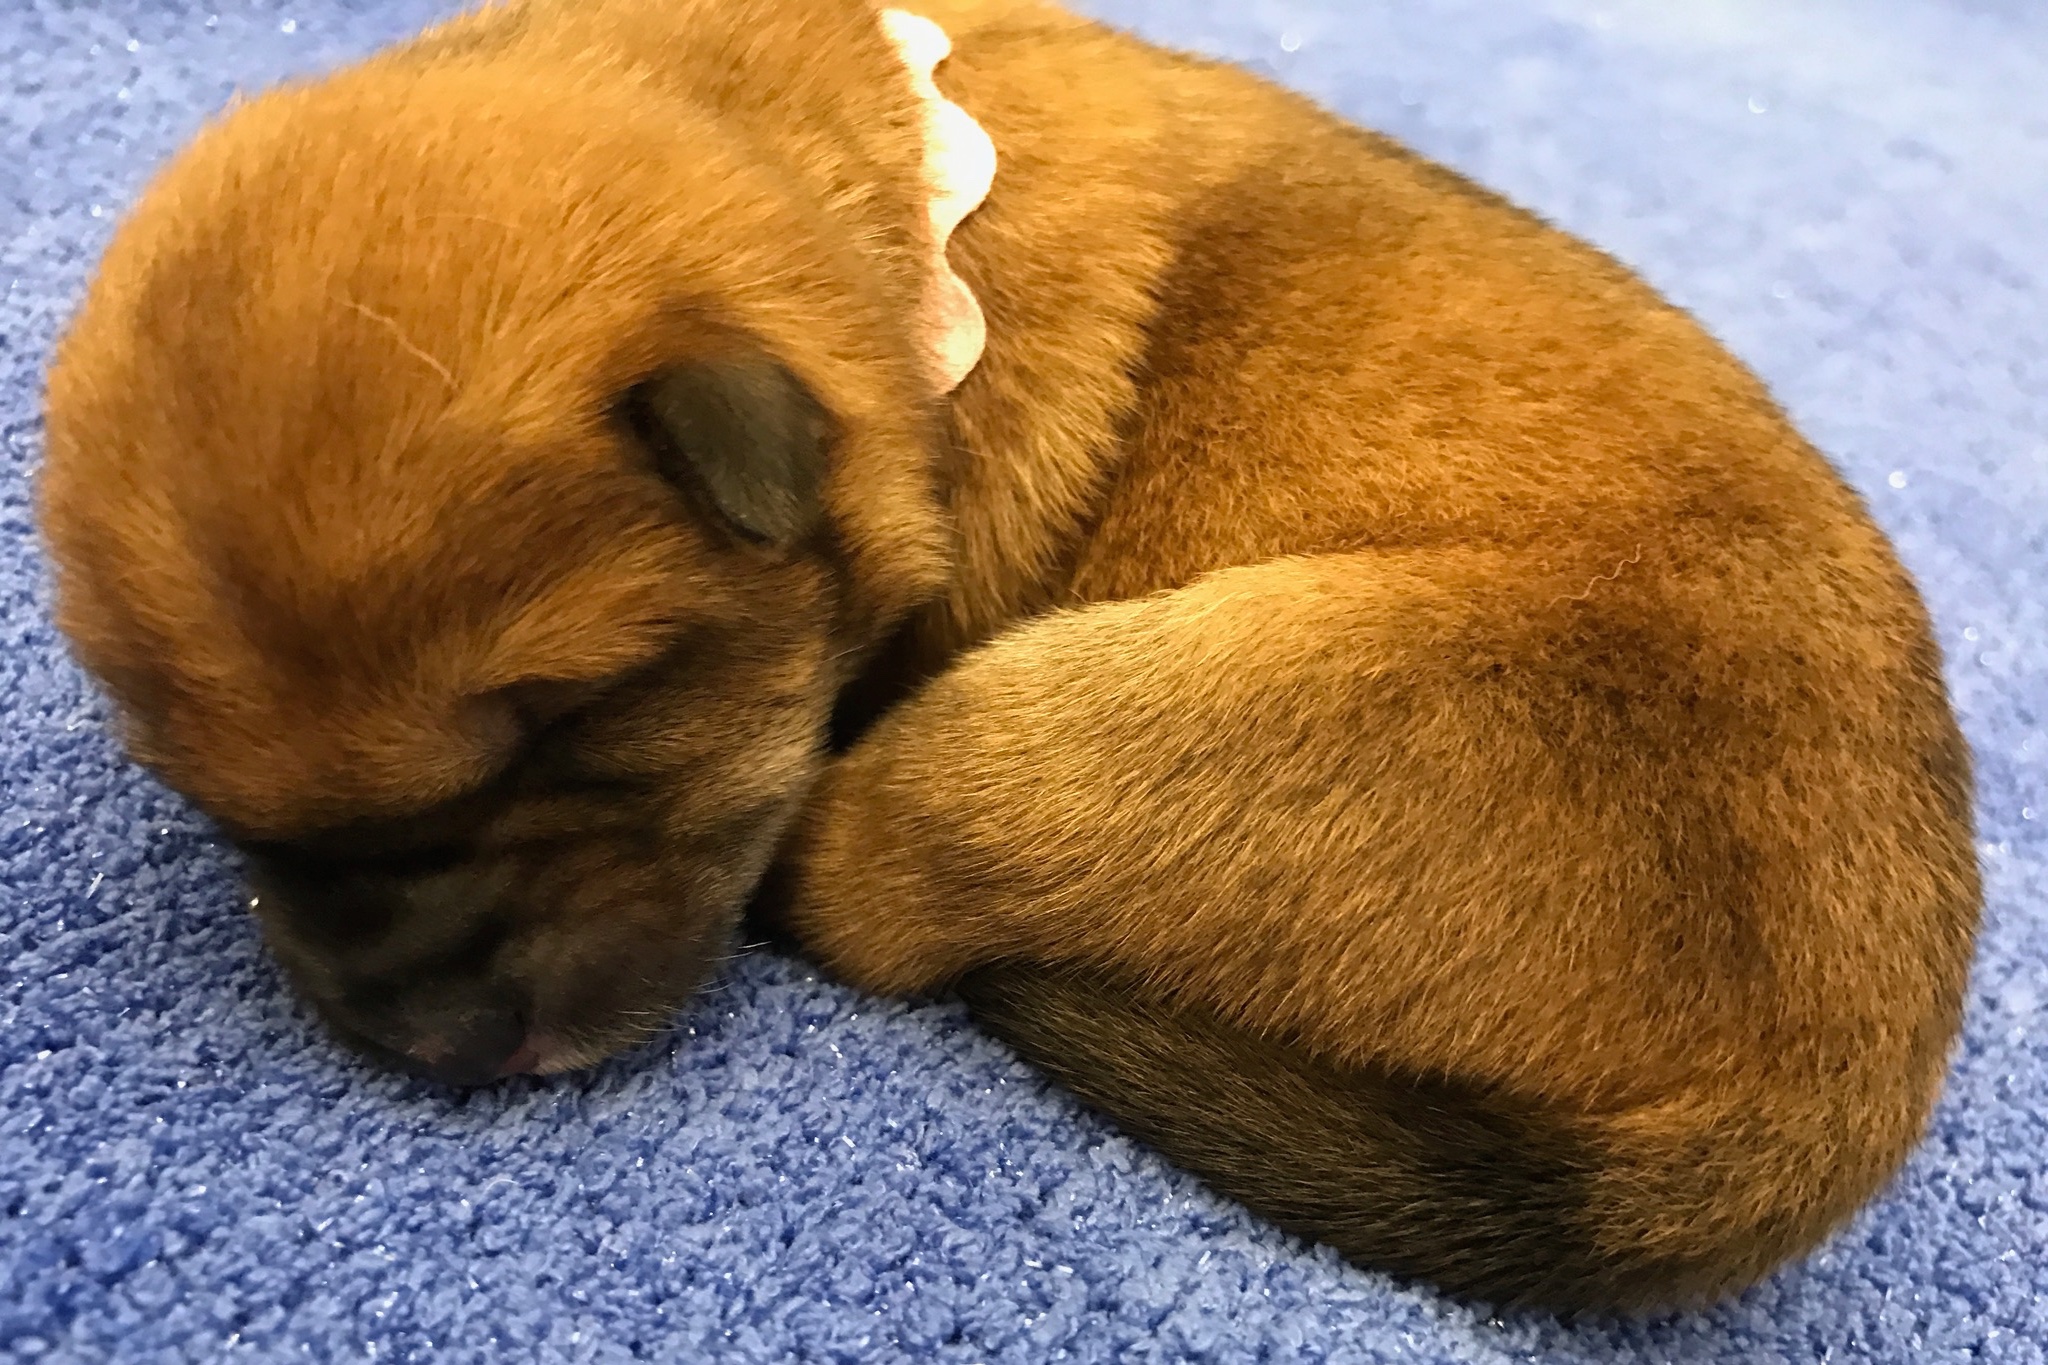 A-litter shikoku puppy 3 March 7, 2017 - Akitsu Shikoku Ken